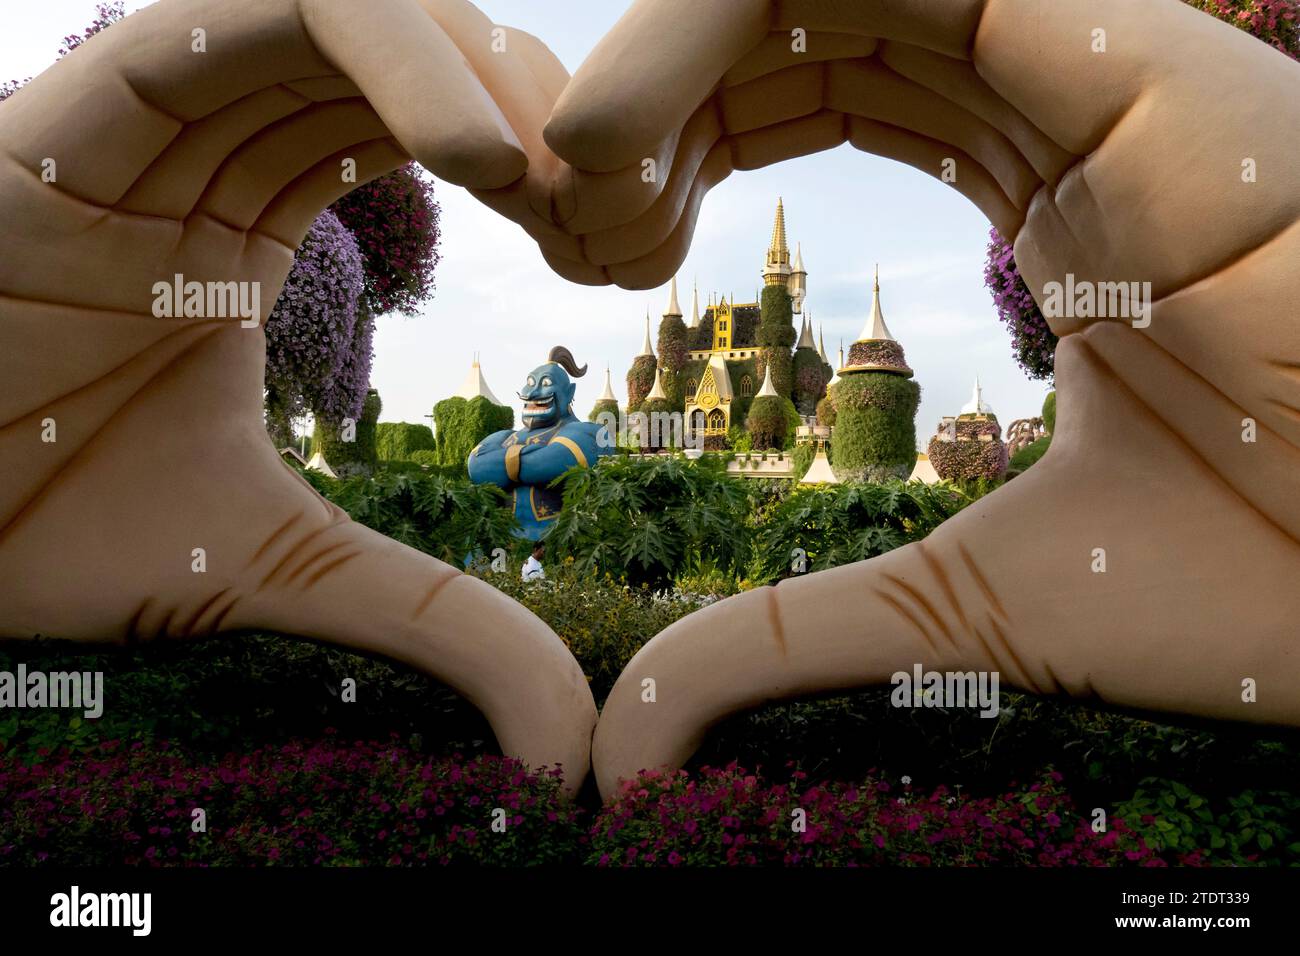 Die Hände zeigen das Herzsymbol in Dubai Miracle Garden, Dubailand, Dubai, VAE Stockfoto